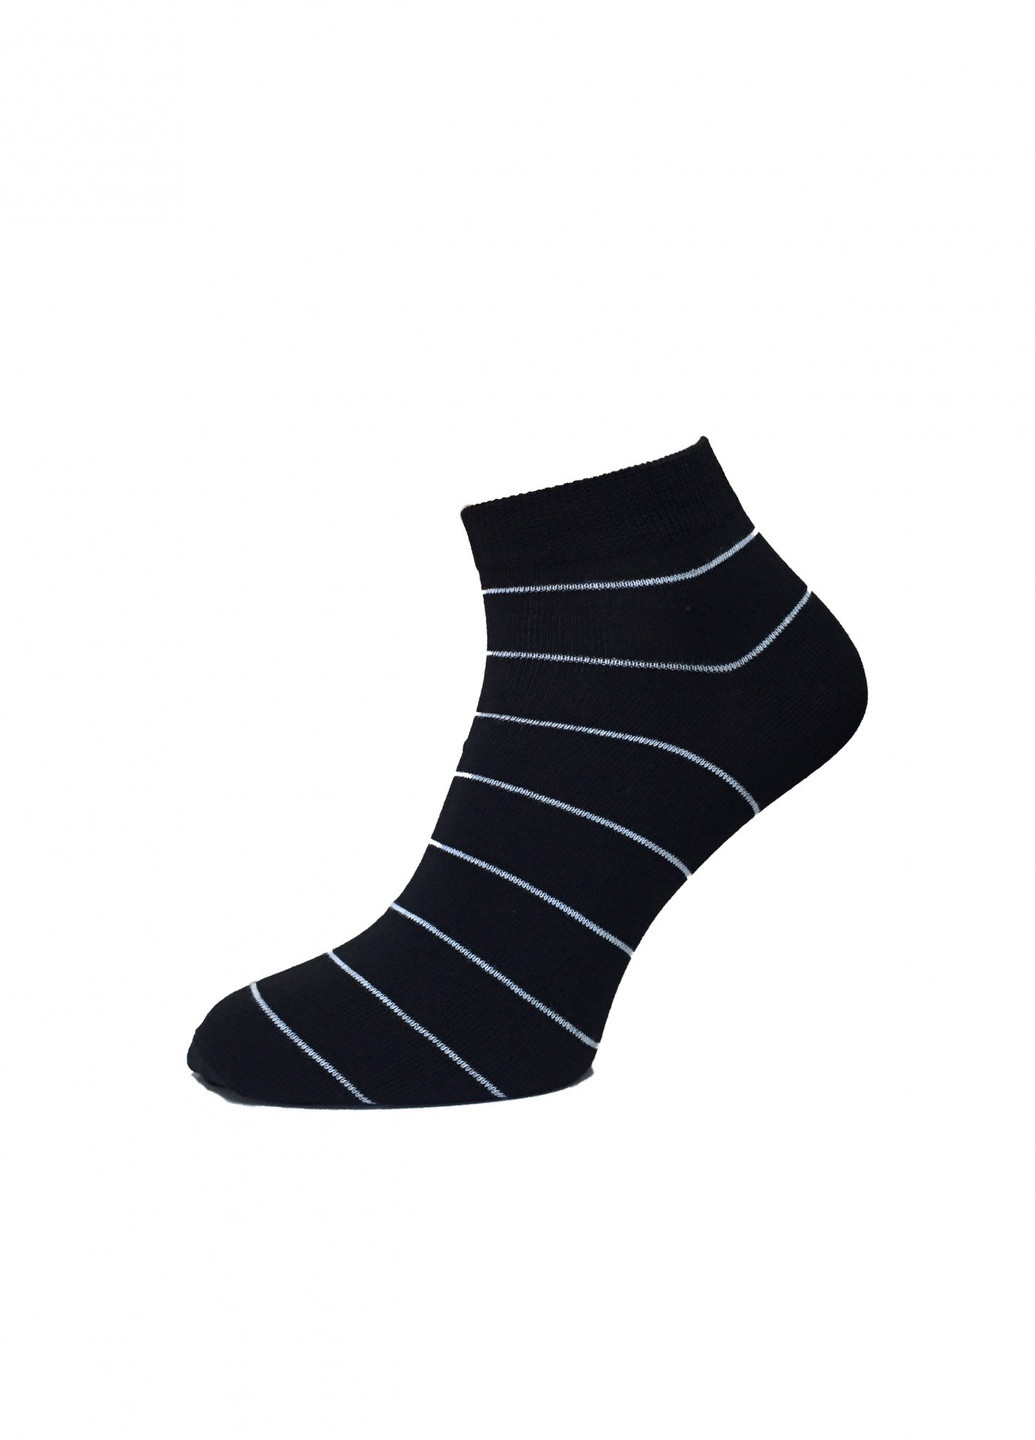 Шкарпетки чоловічі ТМ "Нова пара" 464, в тонку полоску, НОВА ПАРА коротка висота (257108232)